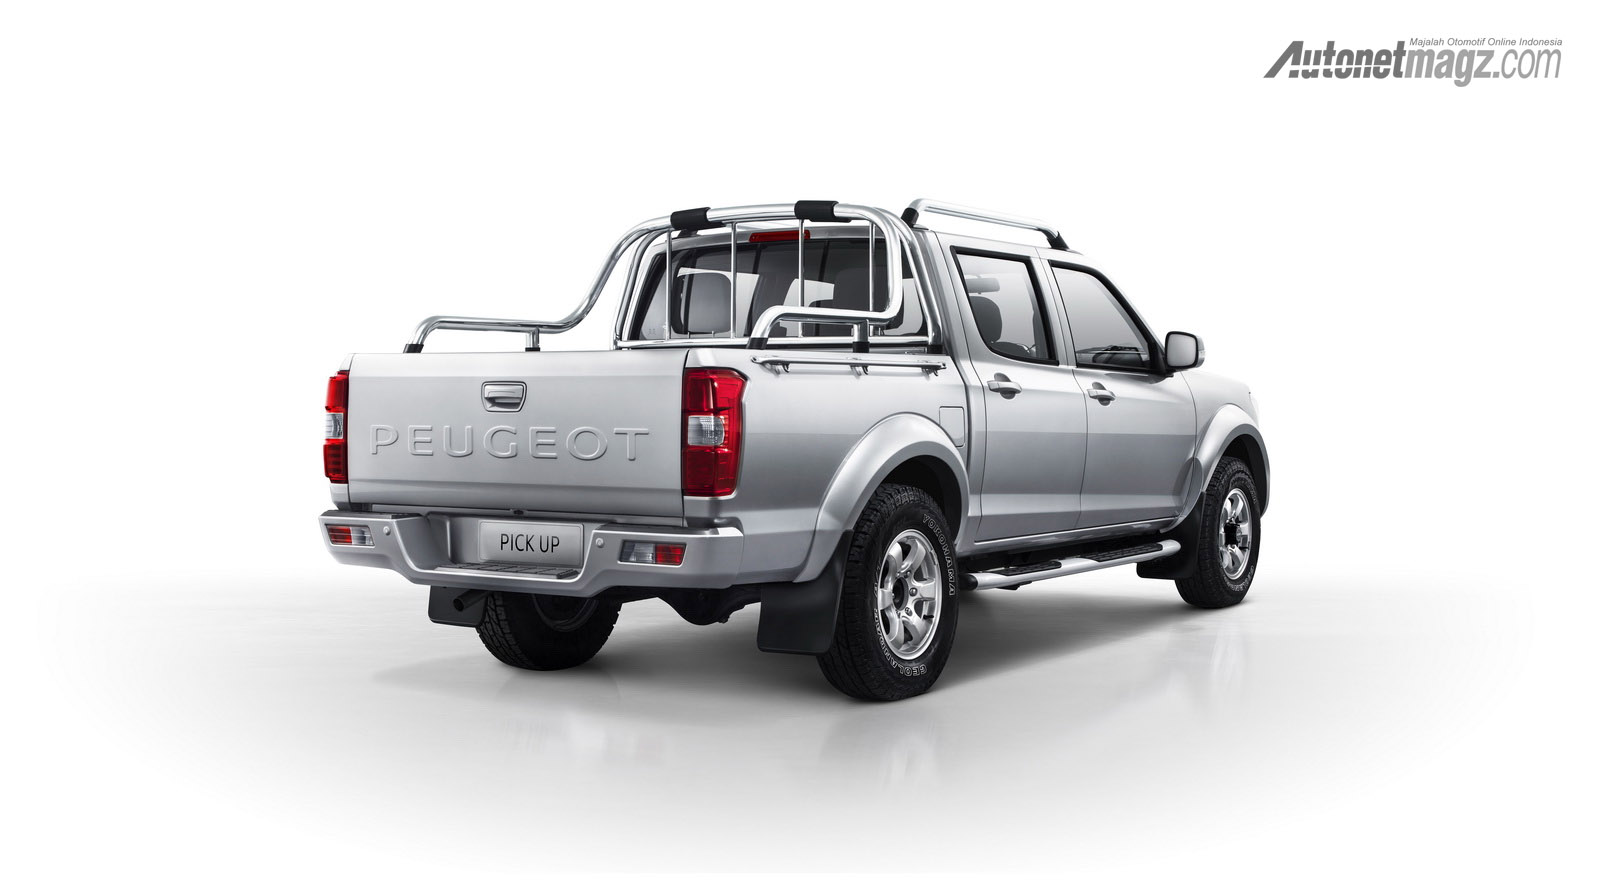 Berita, peugeot pick up belakang: Pick Up Baru Dari Peugeot Berdarah Cina